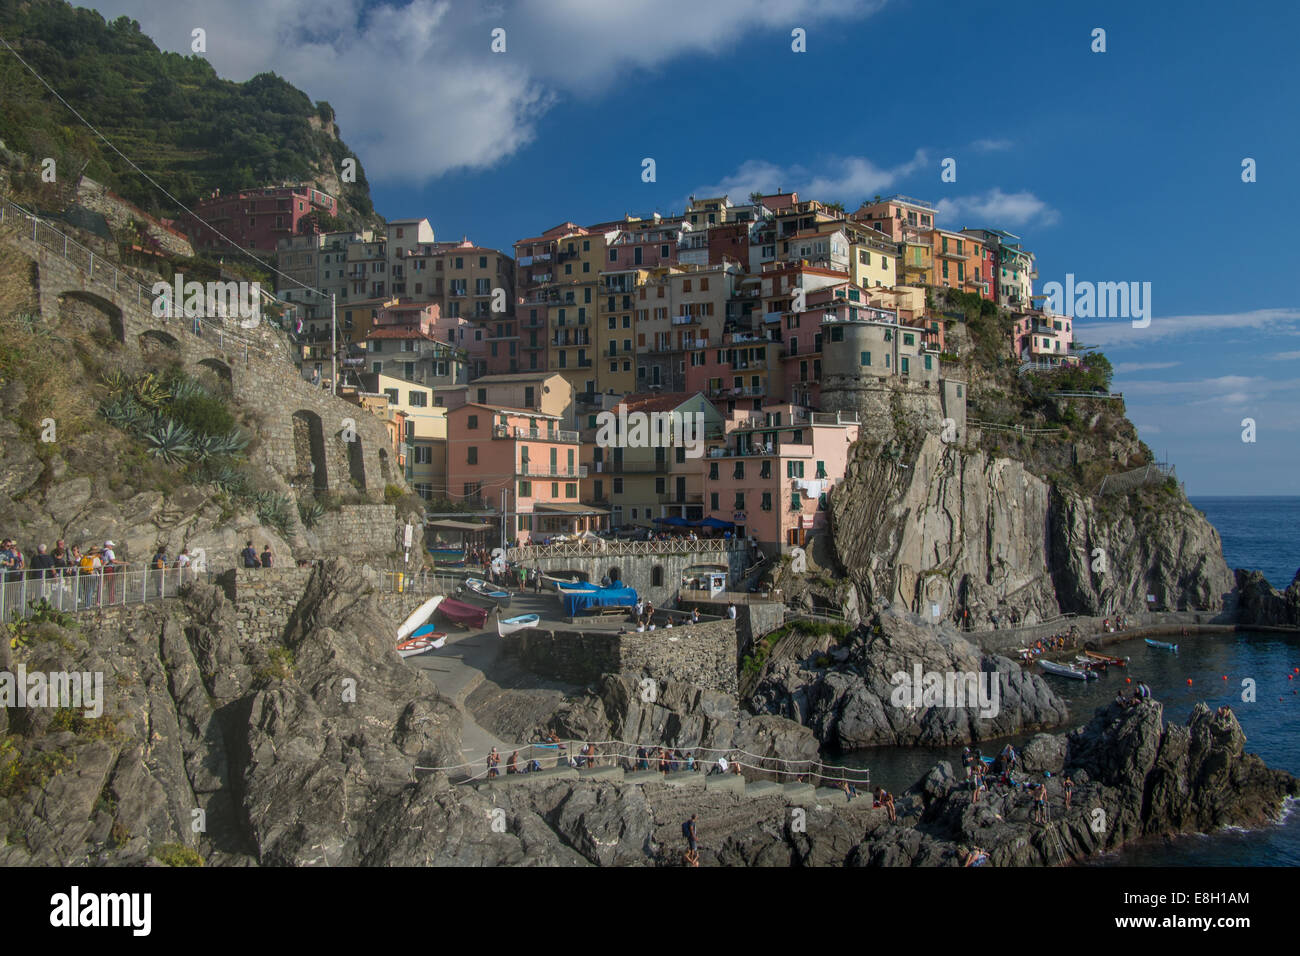 Manarola, Cinque Terre (Five Lands'), Liguria region, Italy. Stock Photo